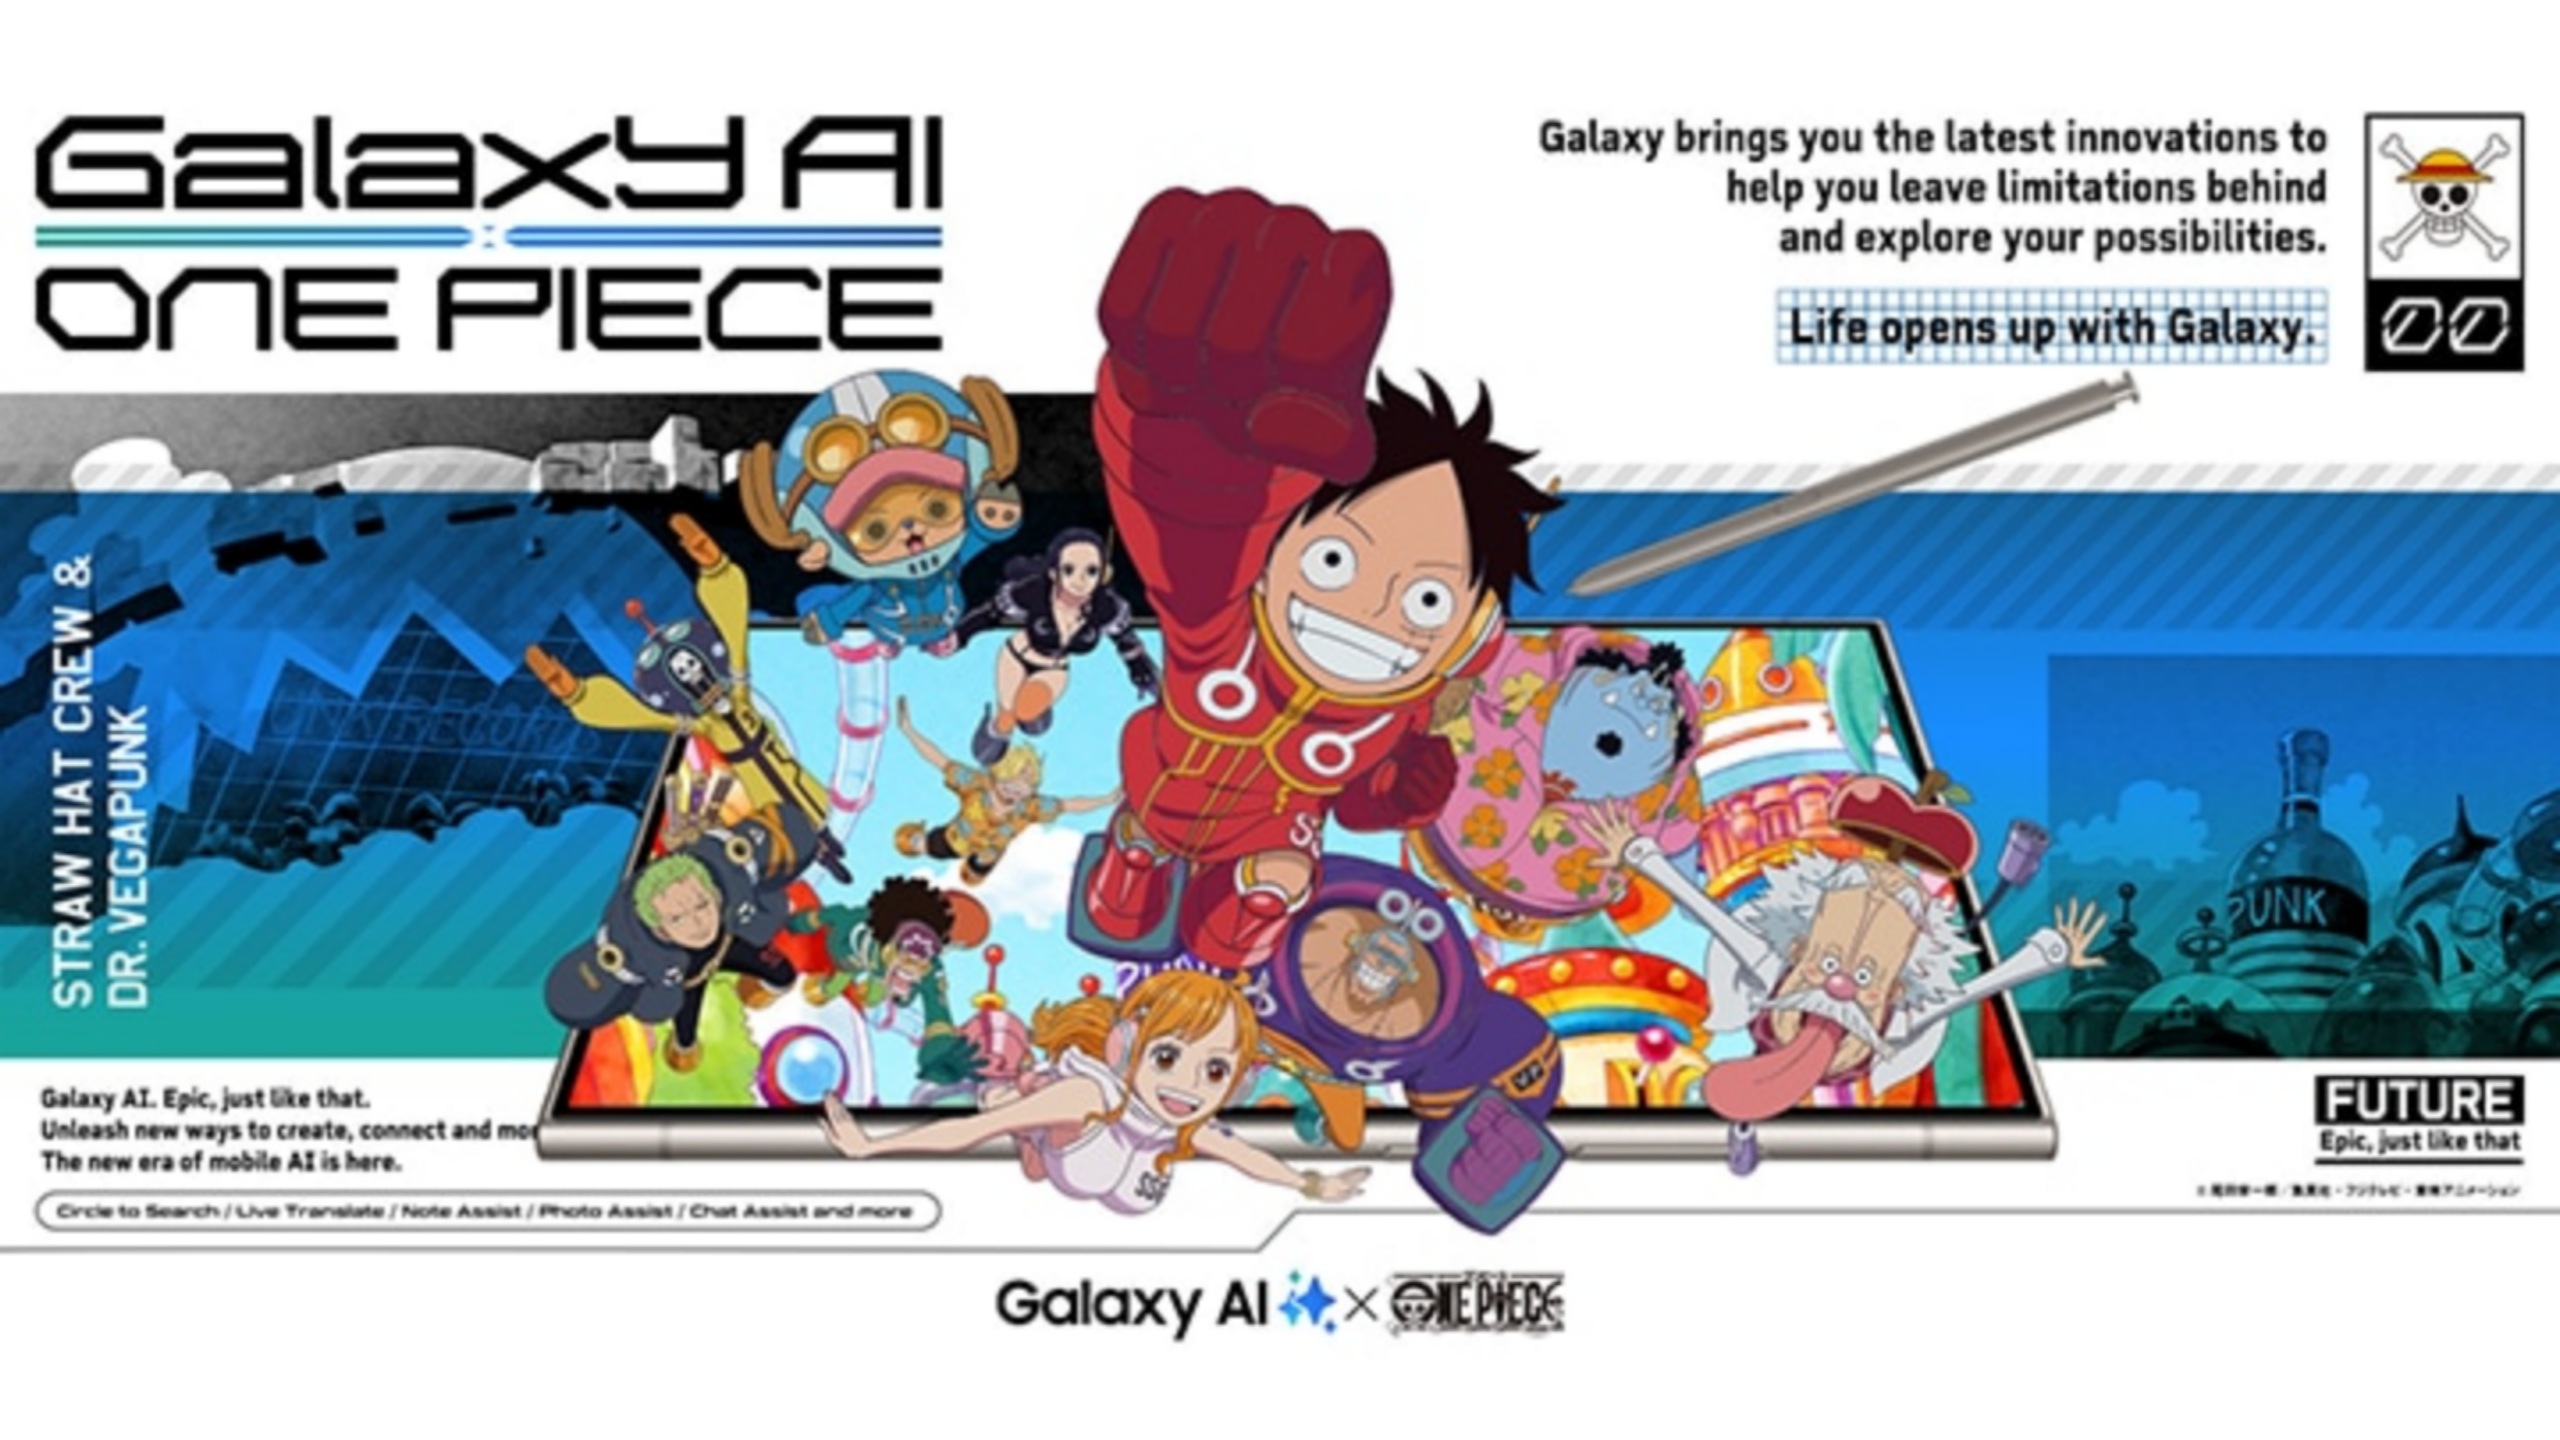 One Piece x Samsung Galaxy AI